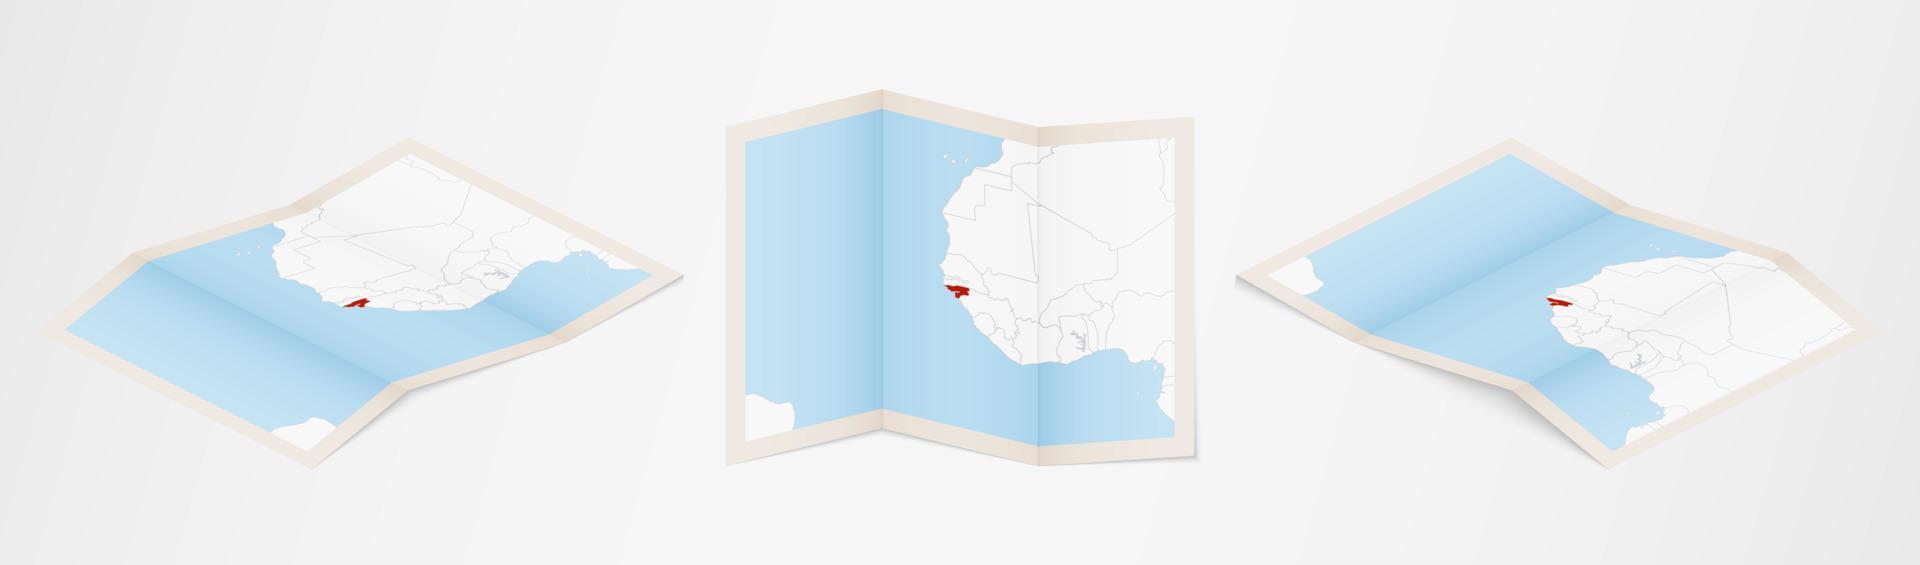 mapa plegado de guinea-bissau en tres versiones diferentes. vector